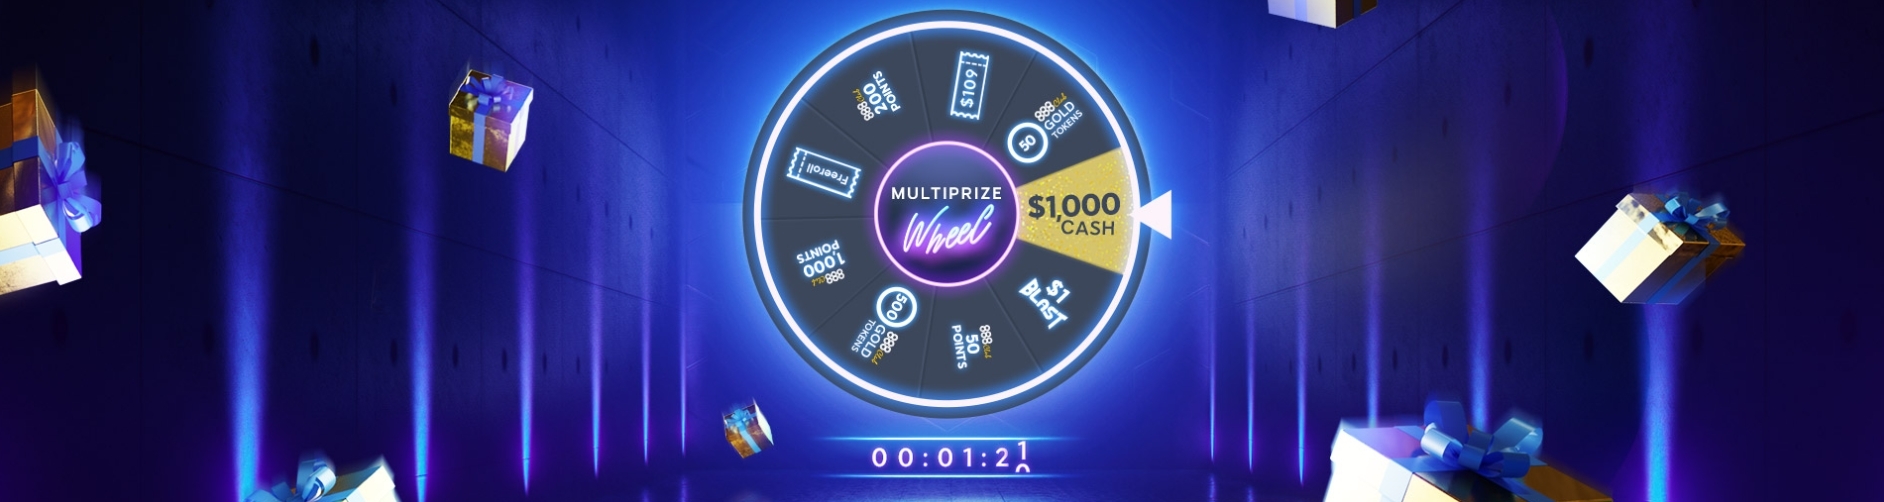 Multiprize Wheel Poker Promotion